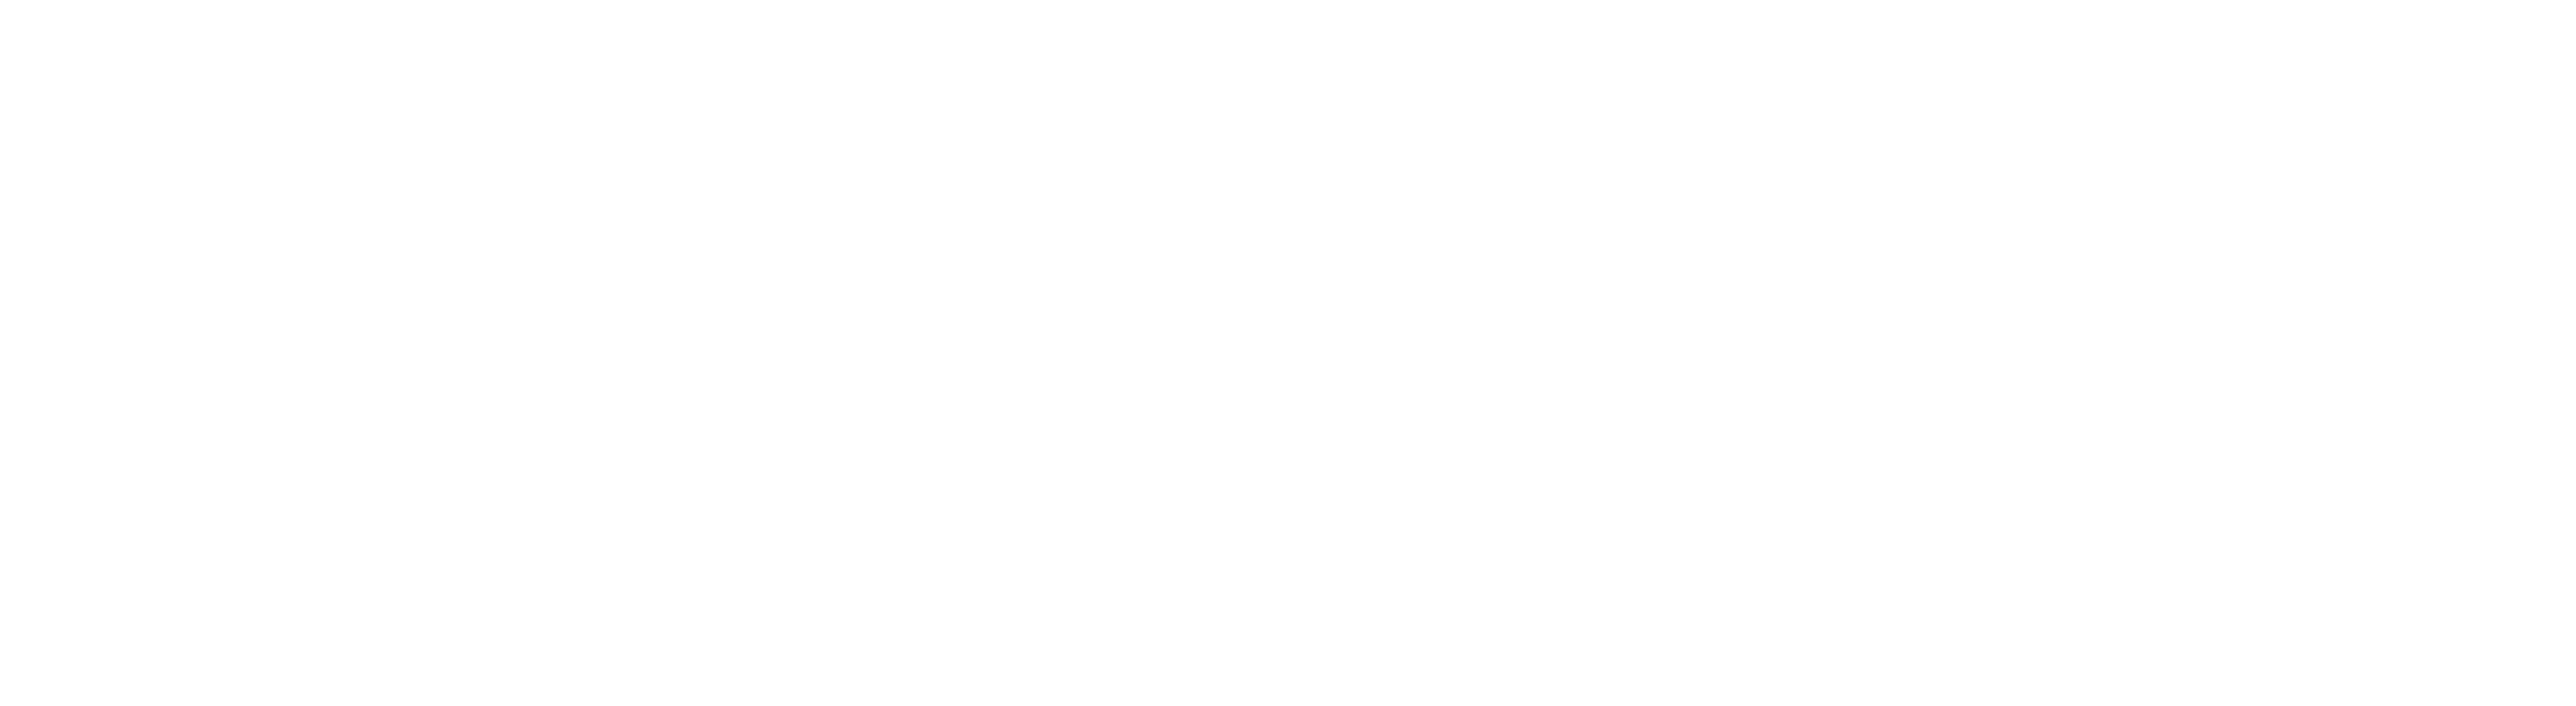 fulcrum logo - white